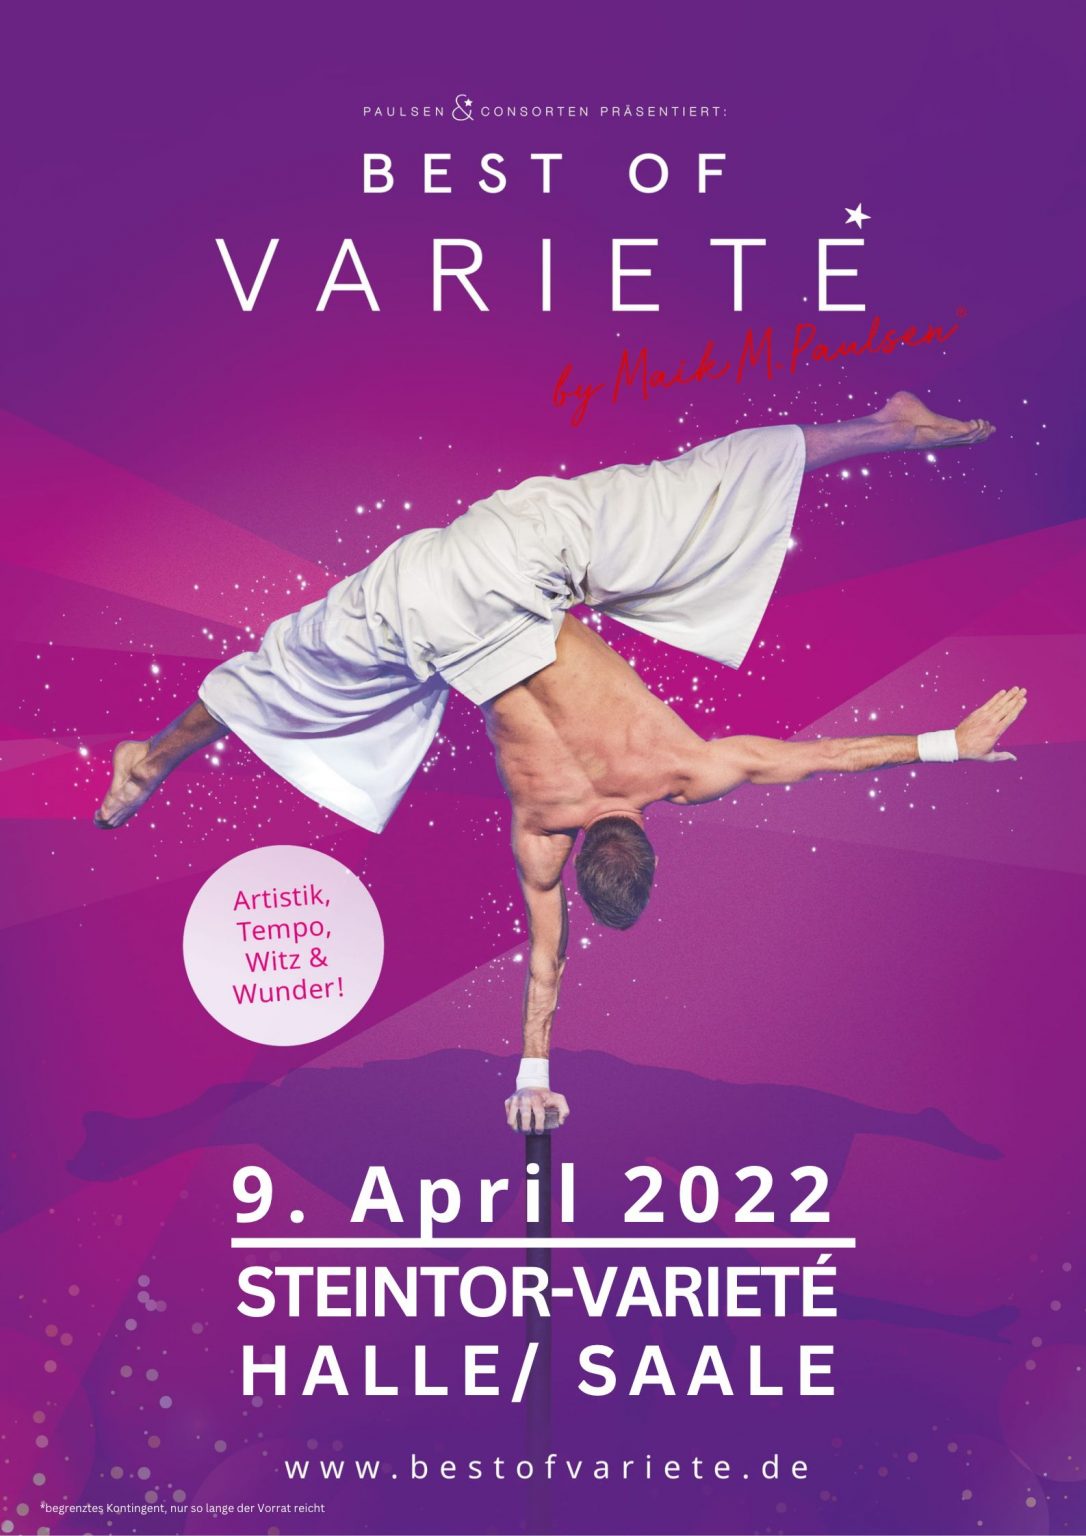 Best of Varieté im Steintor-Varieté in Halle/ Saale.